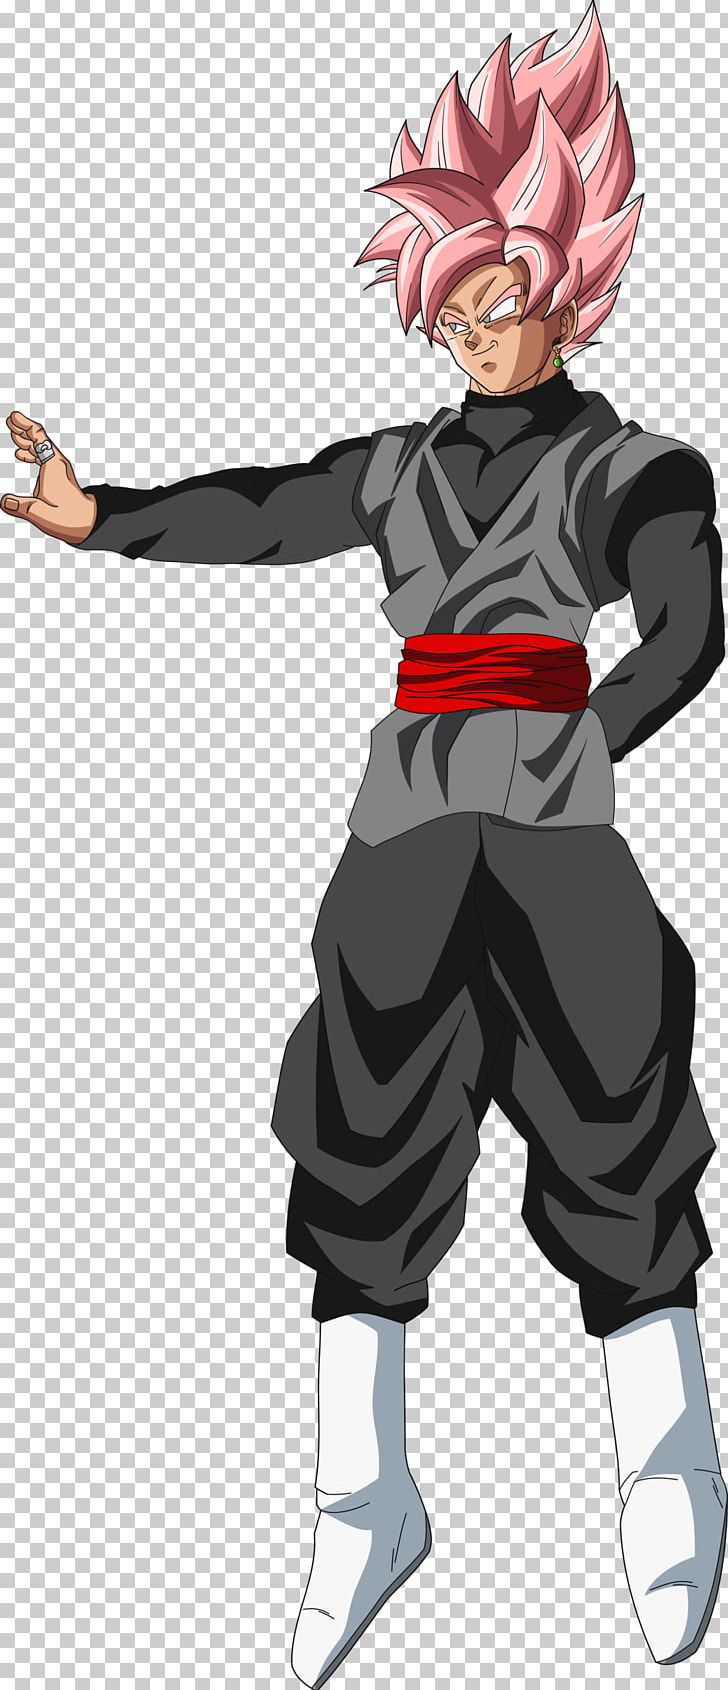 Goku Black Dragon Ball Heroes Gohan Super Saiya Png Clipart Action Figure Anime Art Cartoon Costume